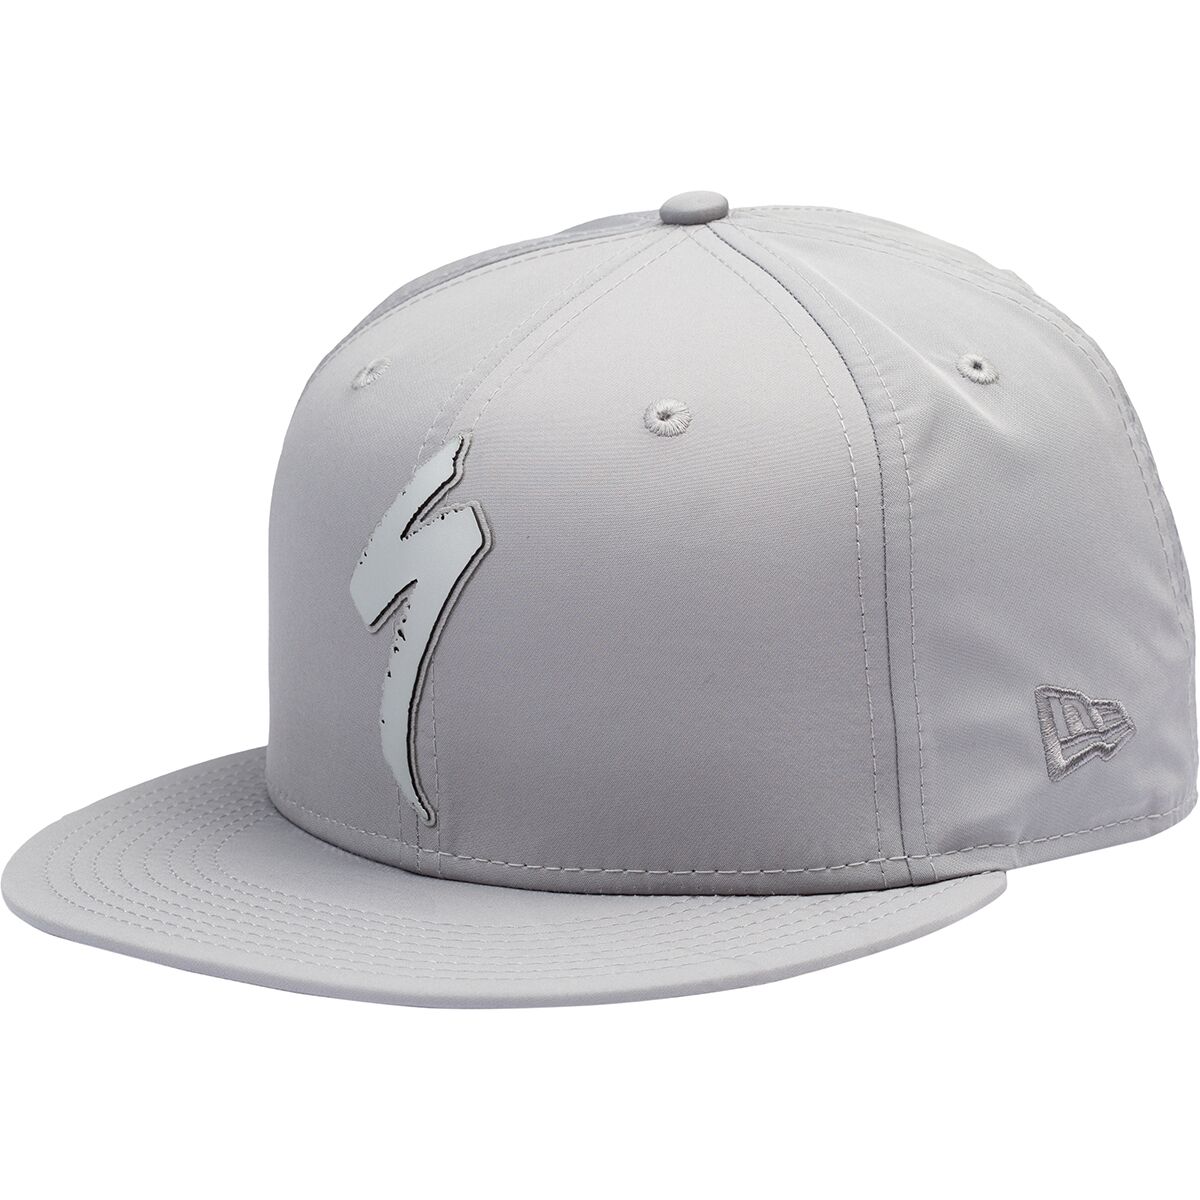 Specialized New New Era 9Fifty Snapback Specialized Hat